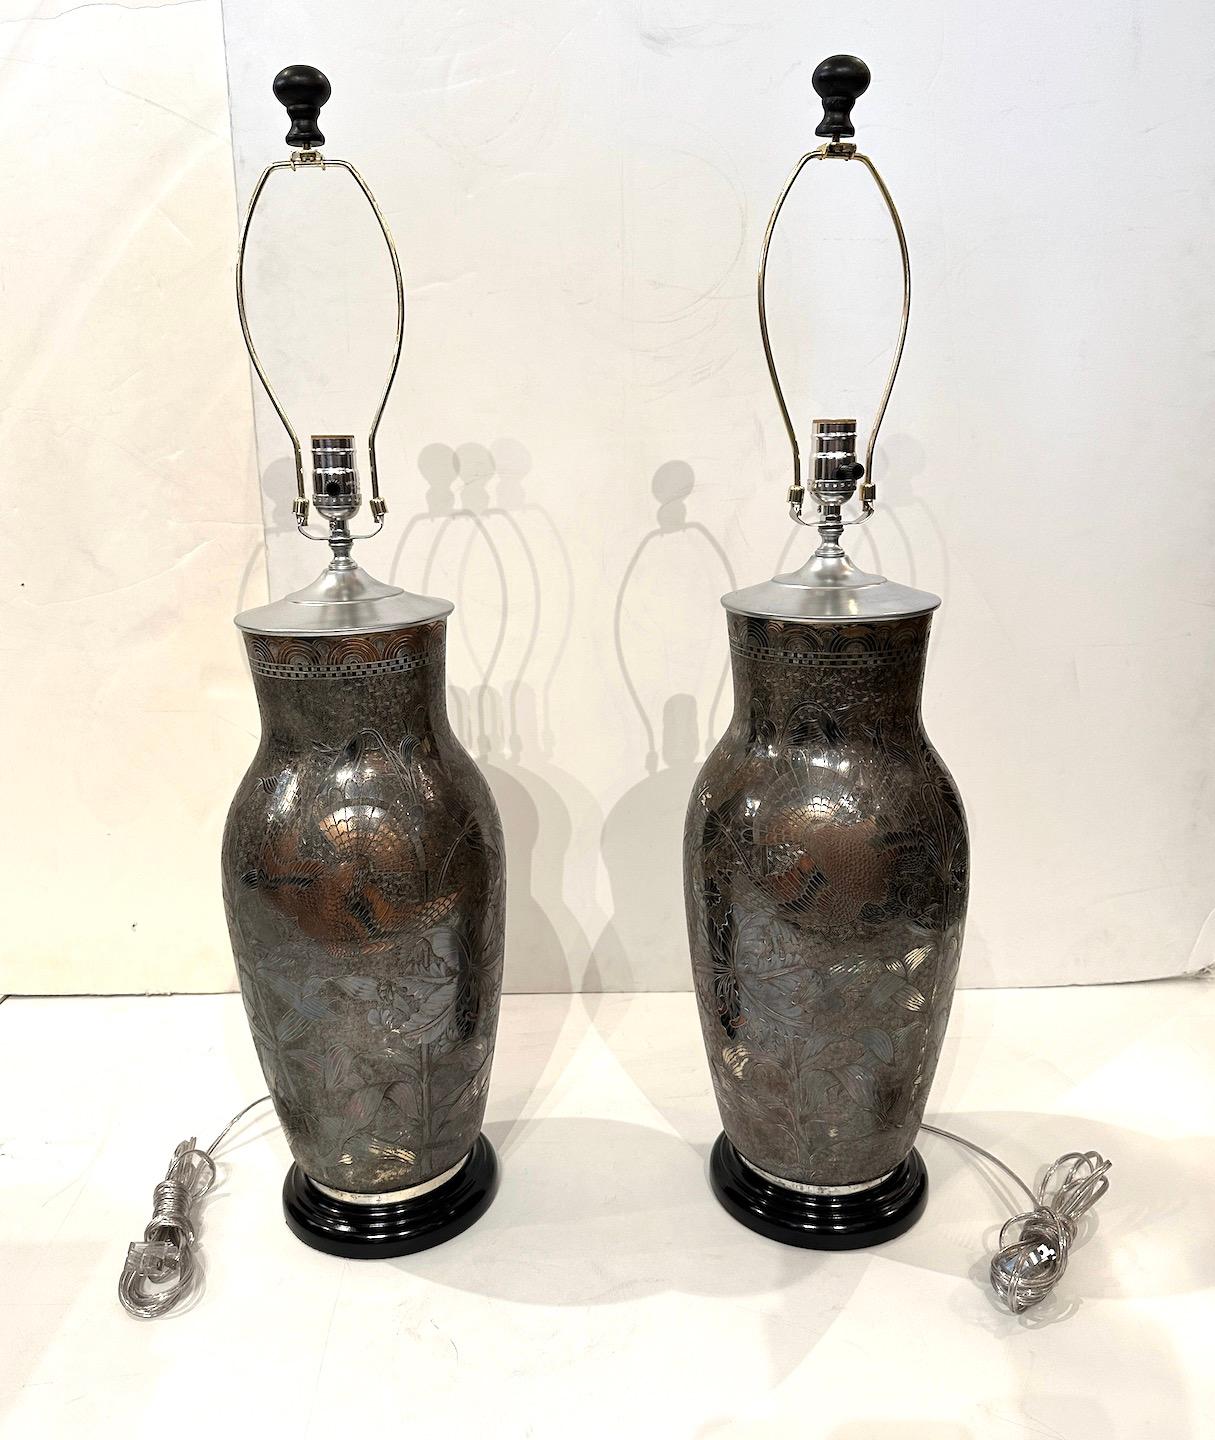 Une belle paire d'urnes en argent sur cuivre avec des motifs gravés complexes d'un oiseau central et de détails floraux, transformés par la suite en lampes.  Ampoule simple, base en bois peint.  Les lampes mesurent 32.5